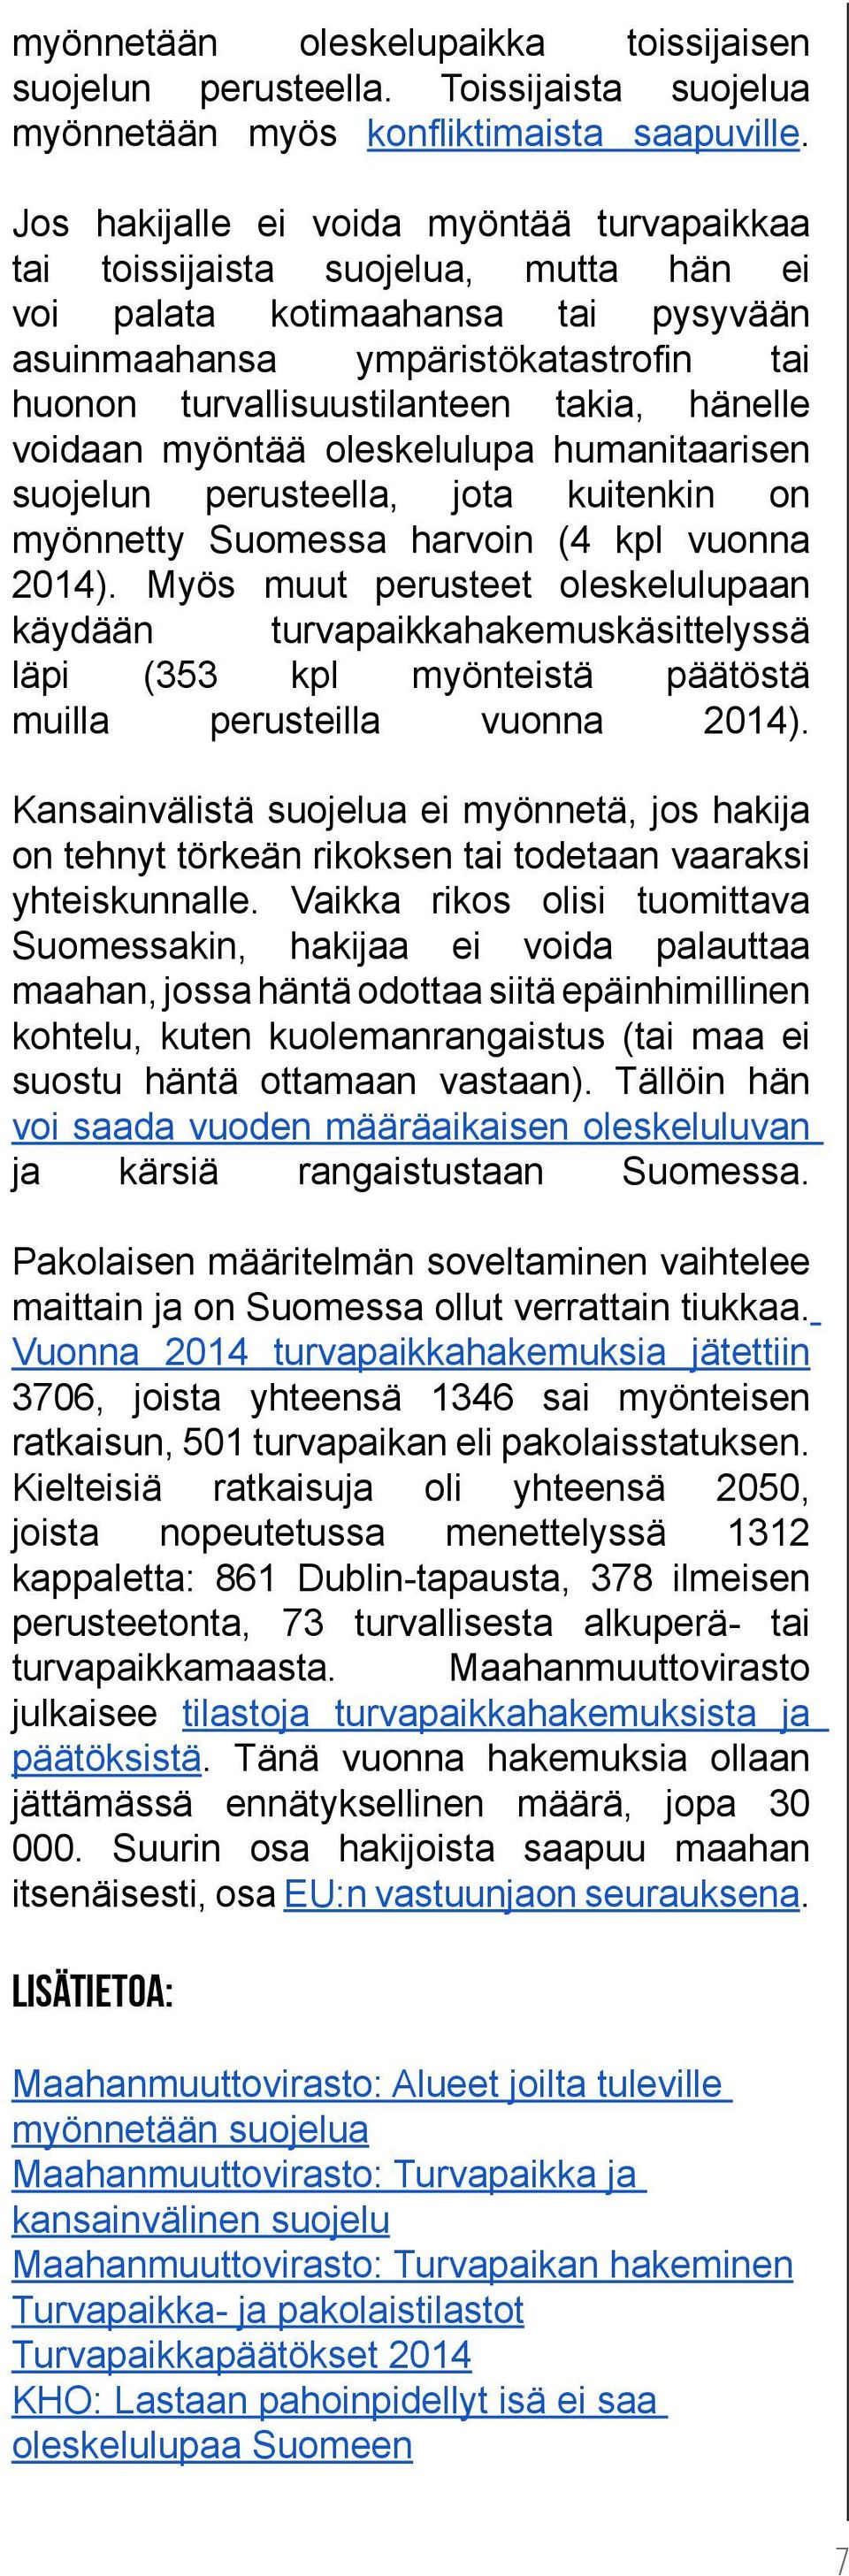 hänelle voidaan myöntää oleskelulupa humanitaarisen suojelun perusteella, jota kuitenkin on myönnetty Suomessa harvoin (4 kpl vuonna 2014).